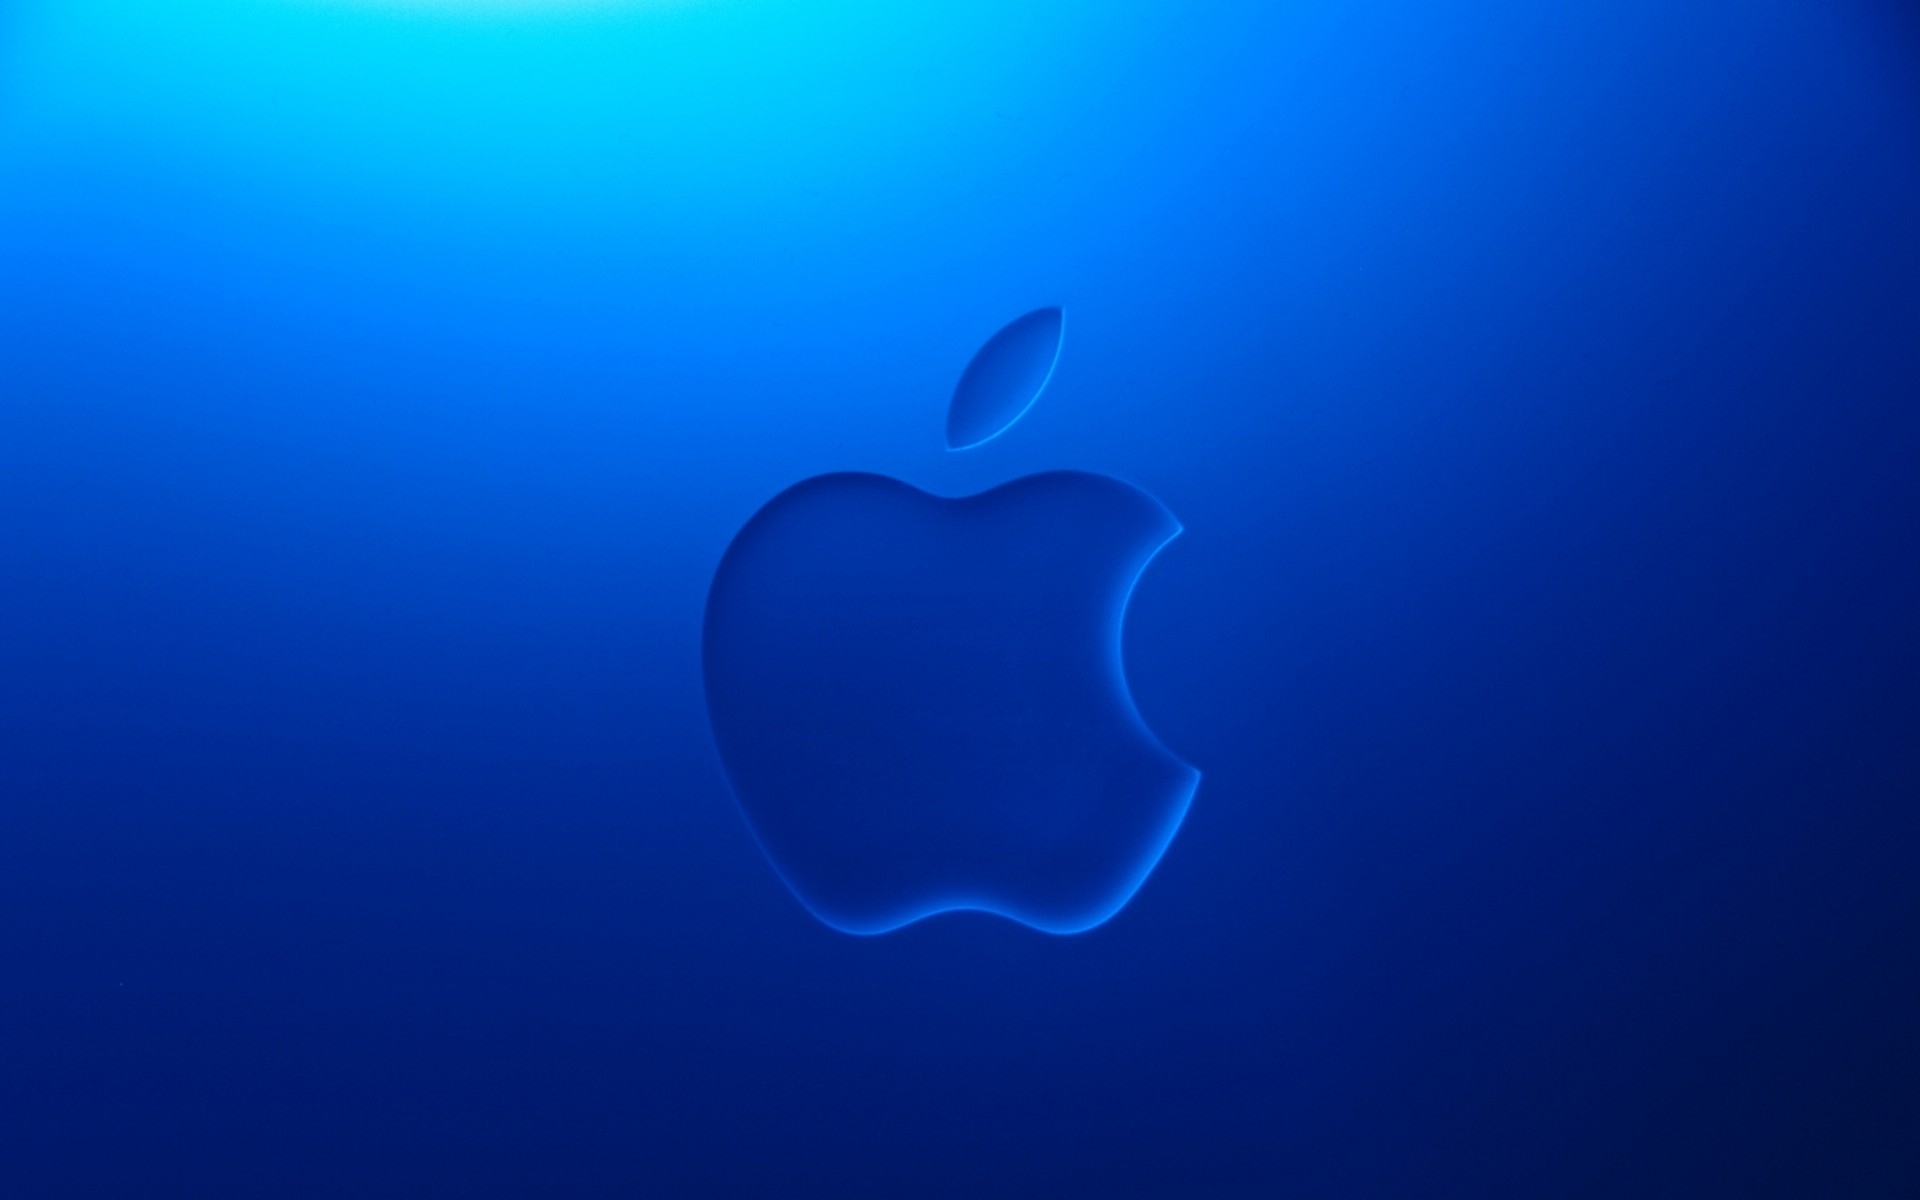 Wallpapers logo emblem apple on the desktop